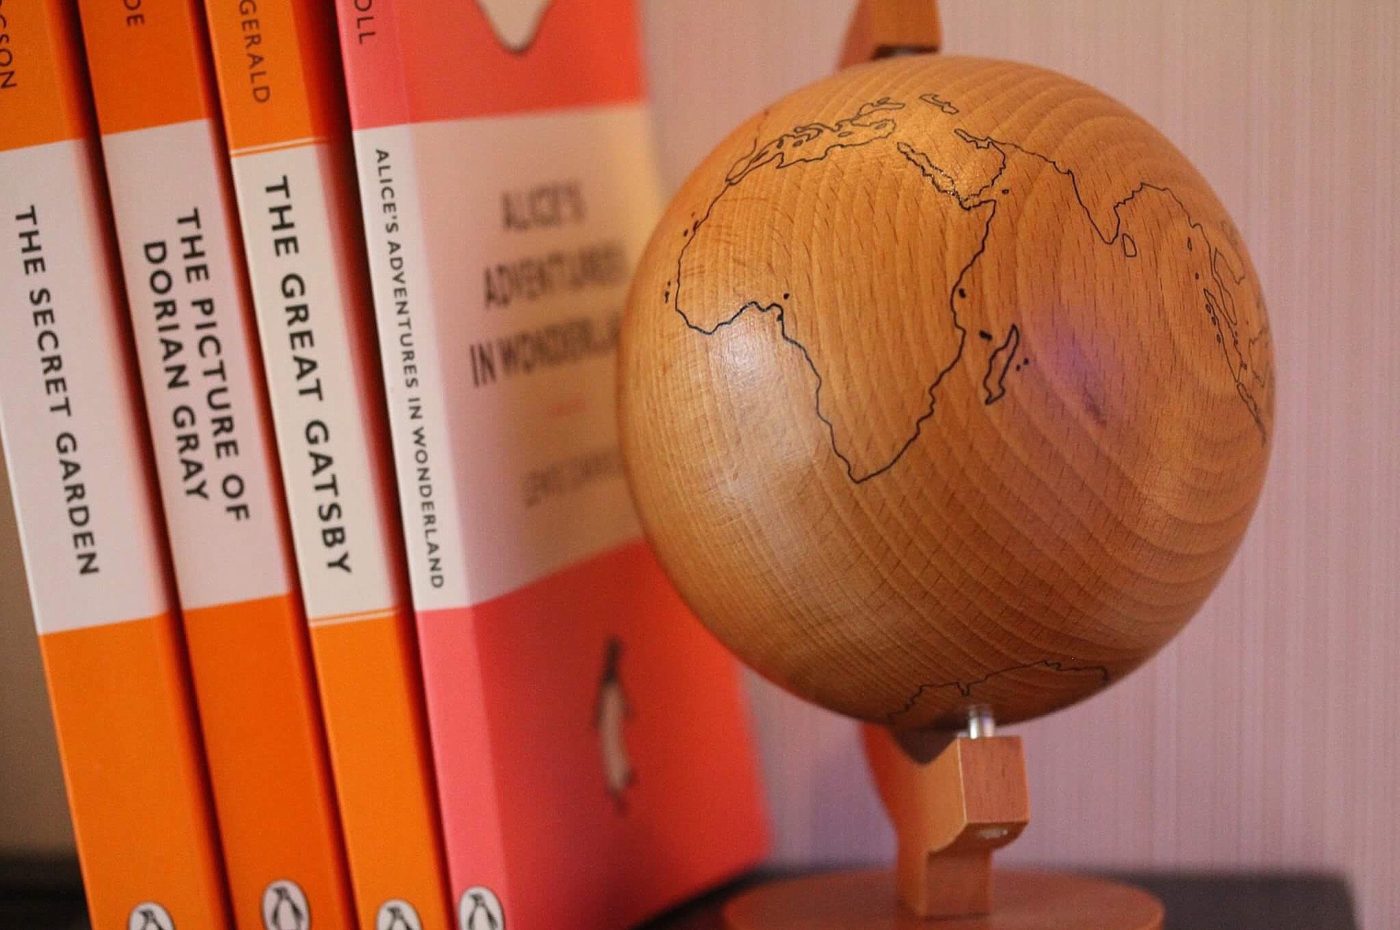 livros na prateleira ao lado de um globo de madeira